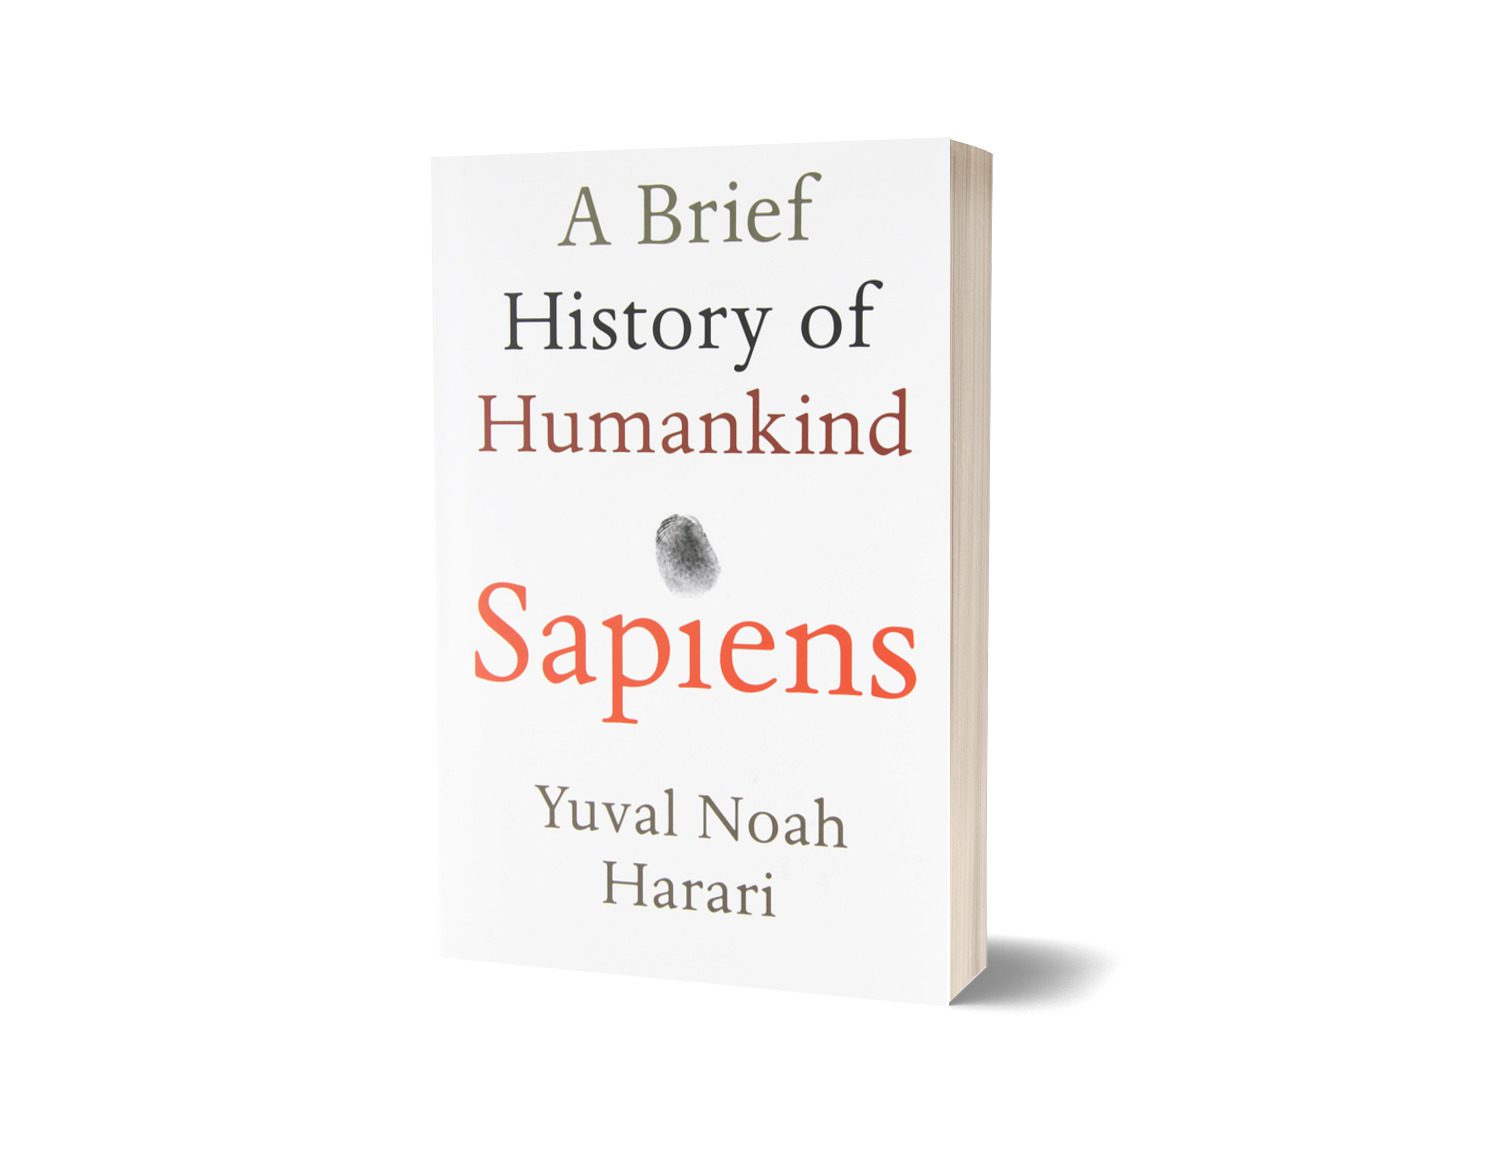 sapiens a brief history of humankind yuval noah harari